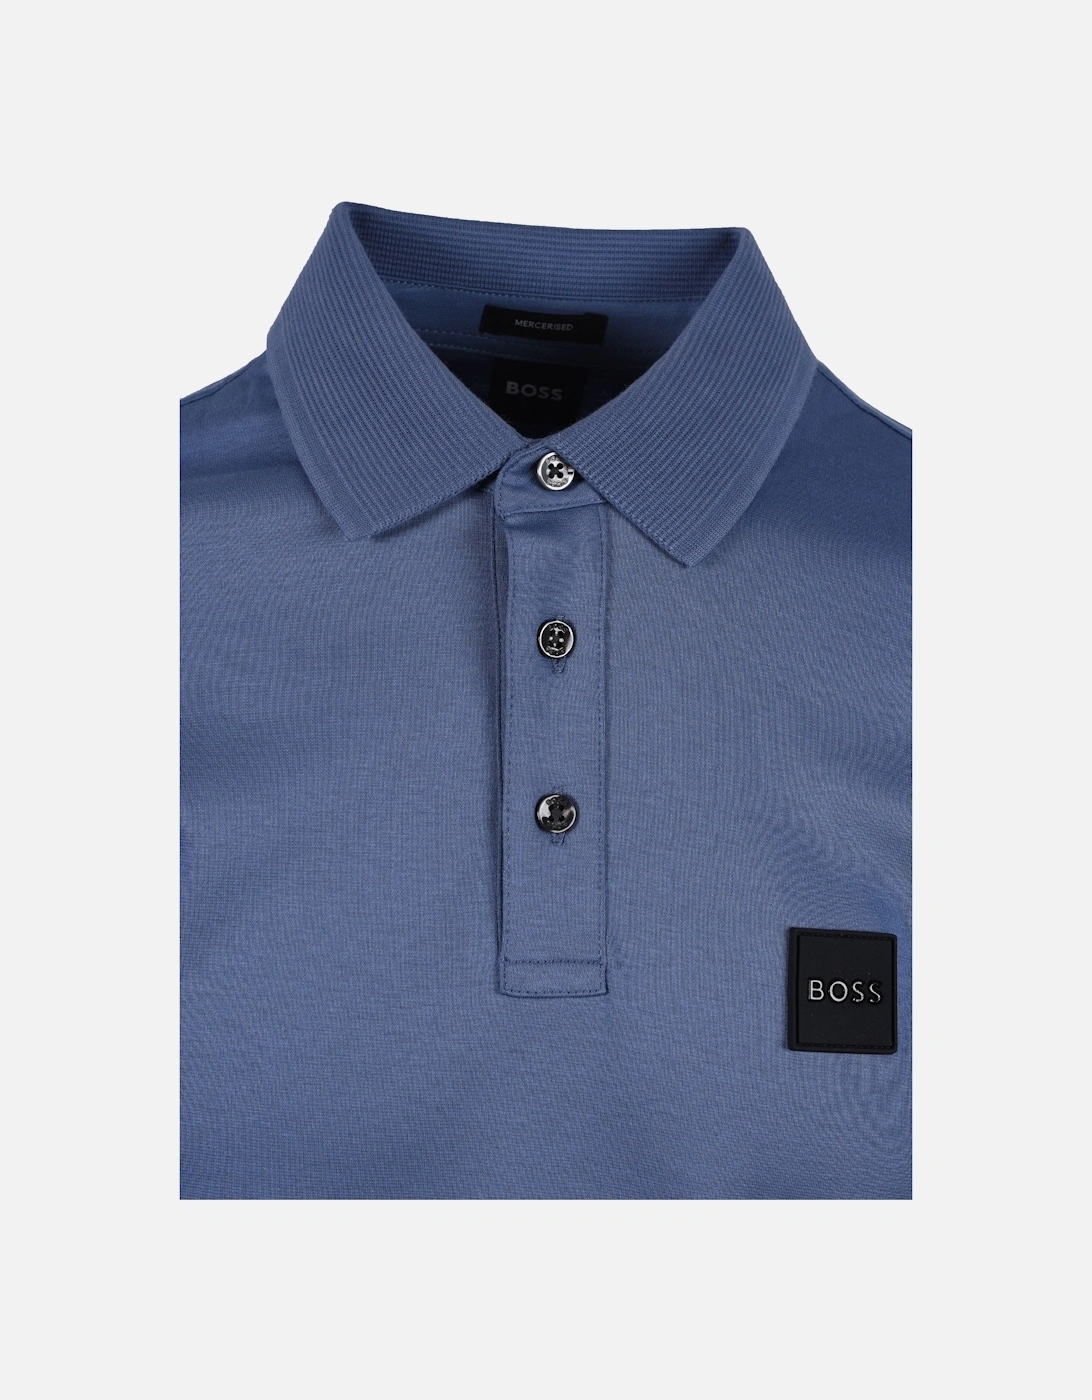 Boss Pado 08 Long Sleeved Polo Shirt Open Blue